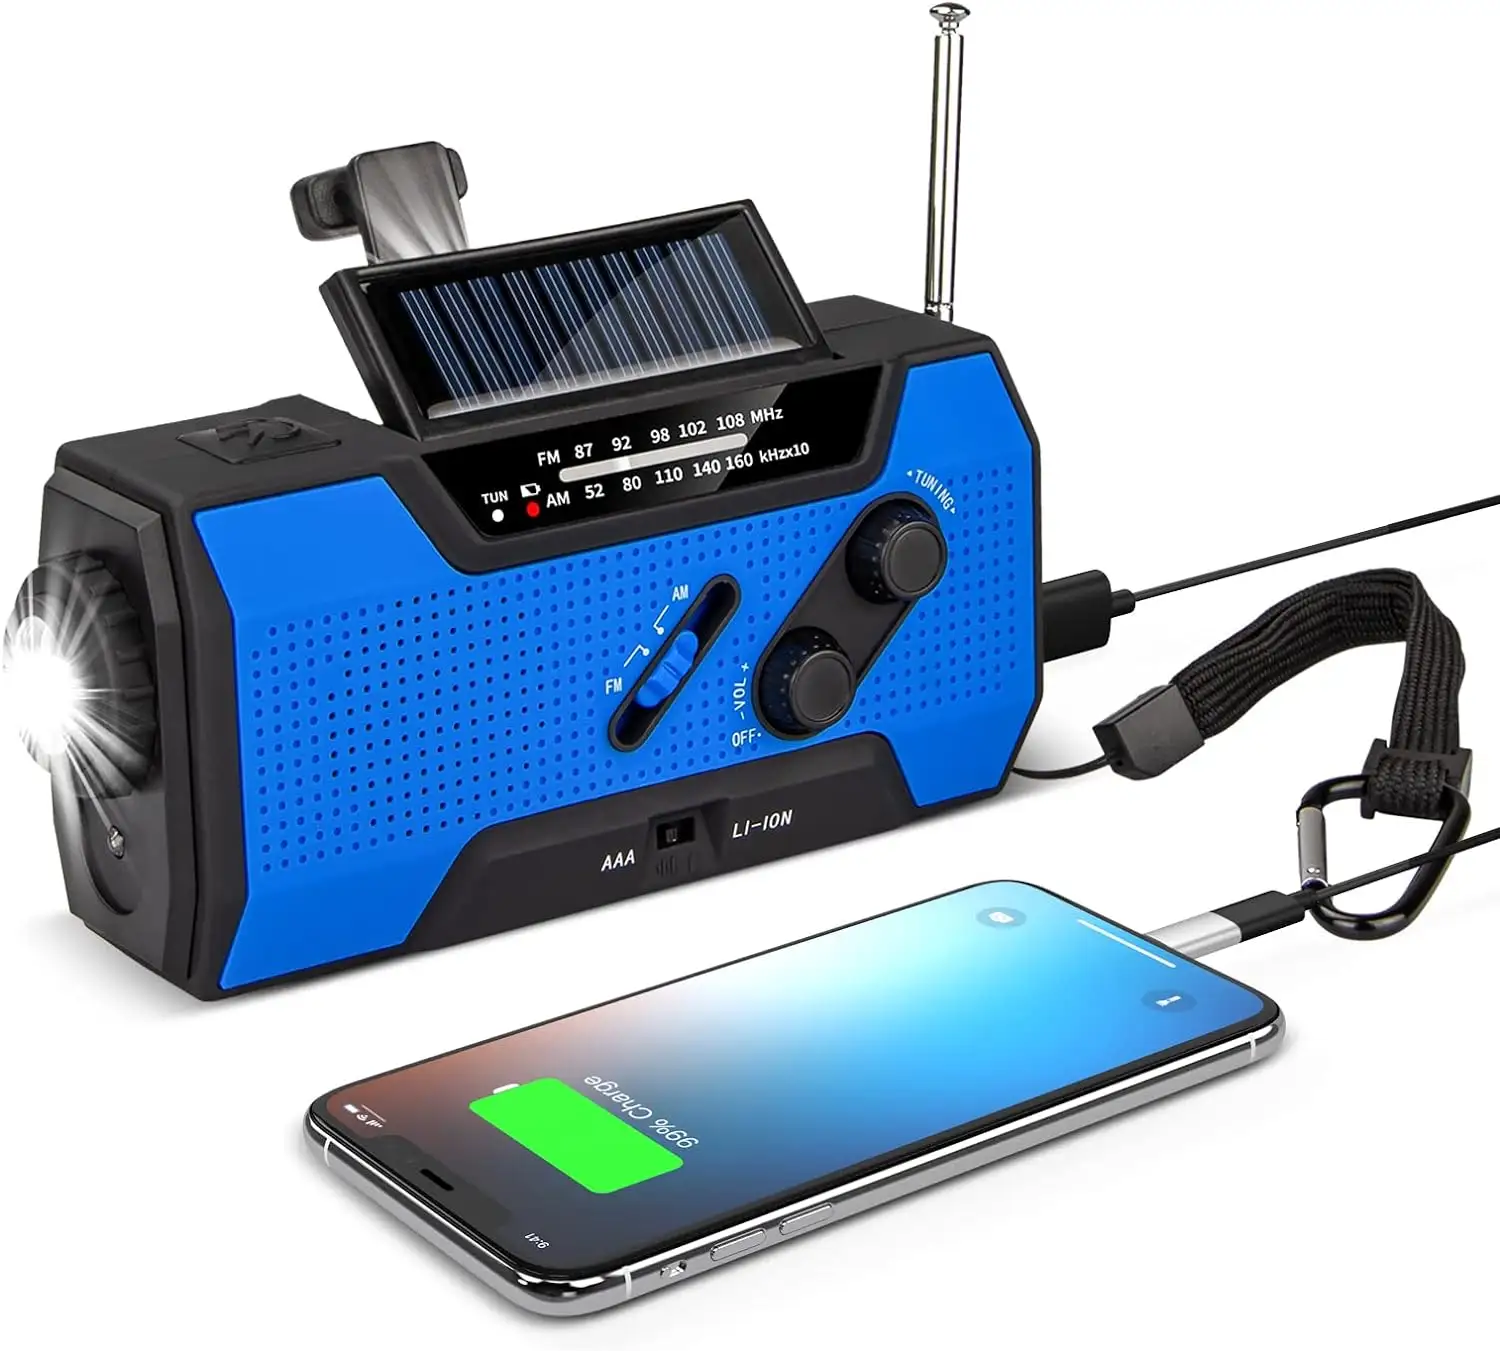 Güneş radyo taşınabilir krank radyo şarj edilebilir dinamo radyo AM/FM/WB2000 mAh şarj edilebilir pil LED Torch SOS Alarm acil